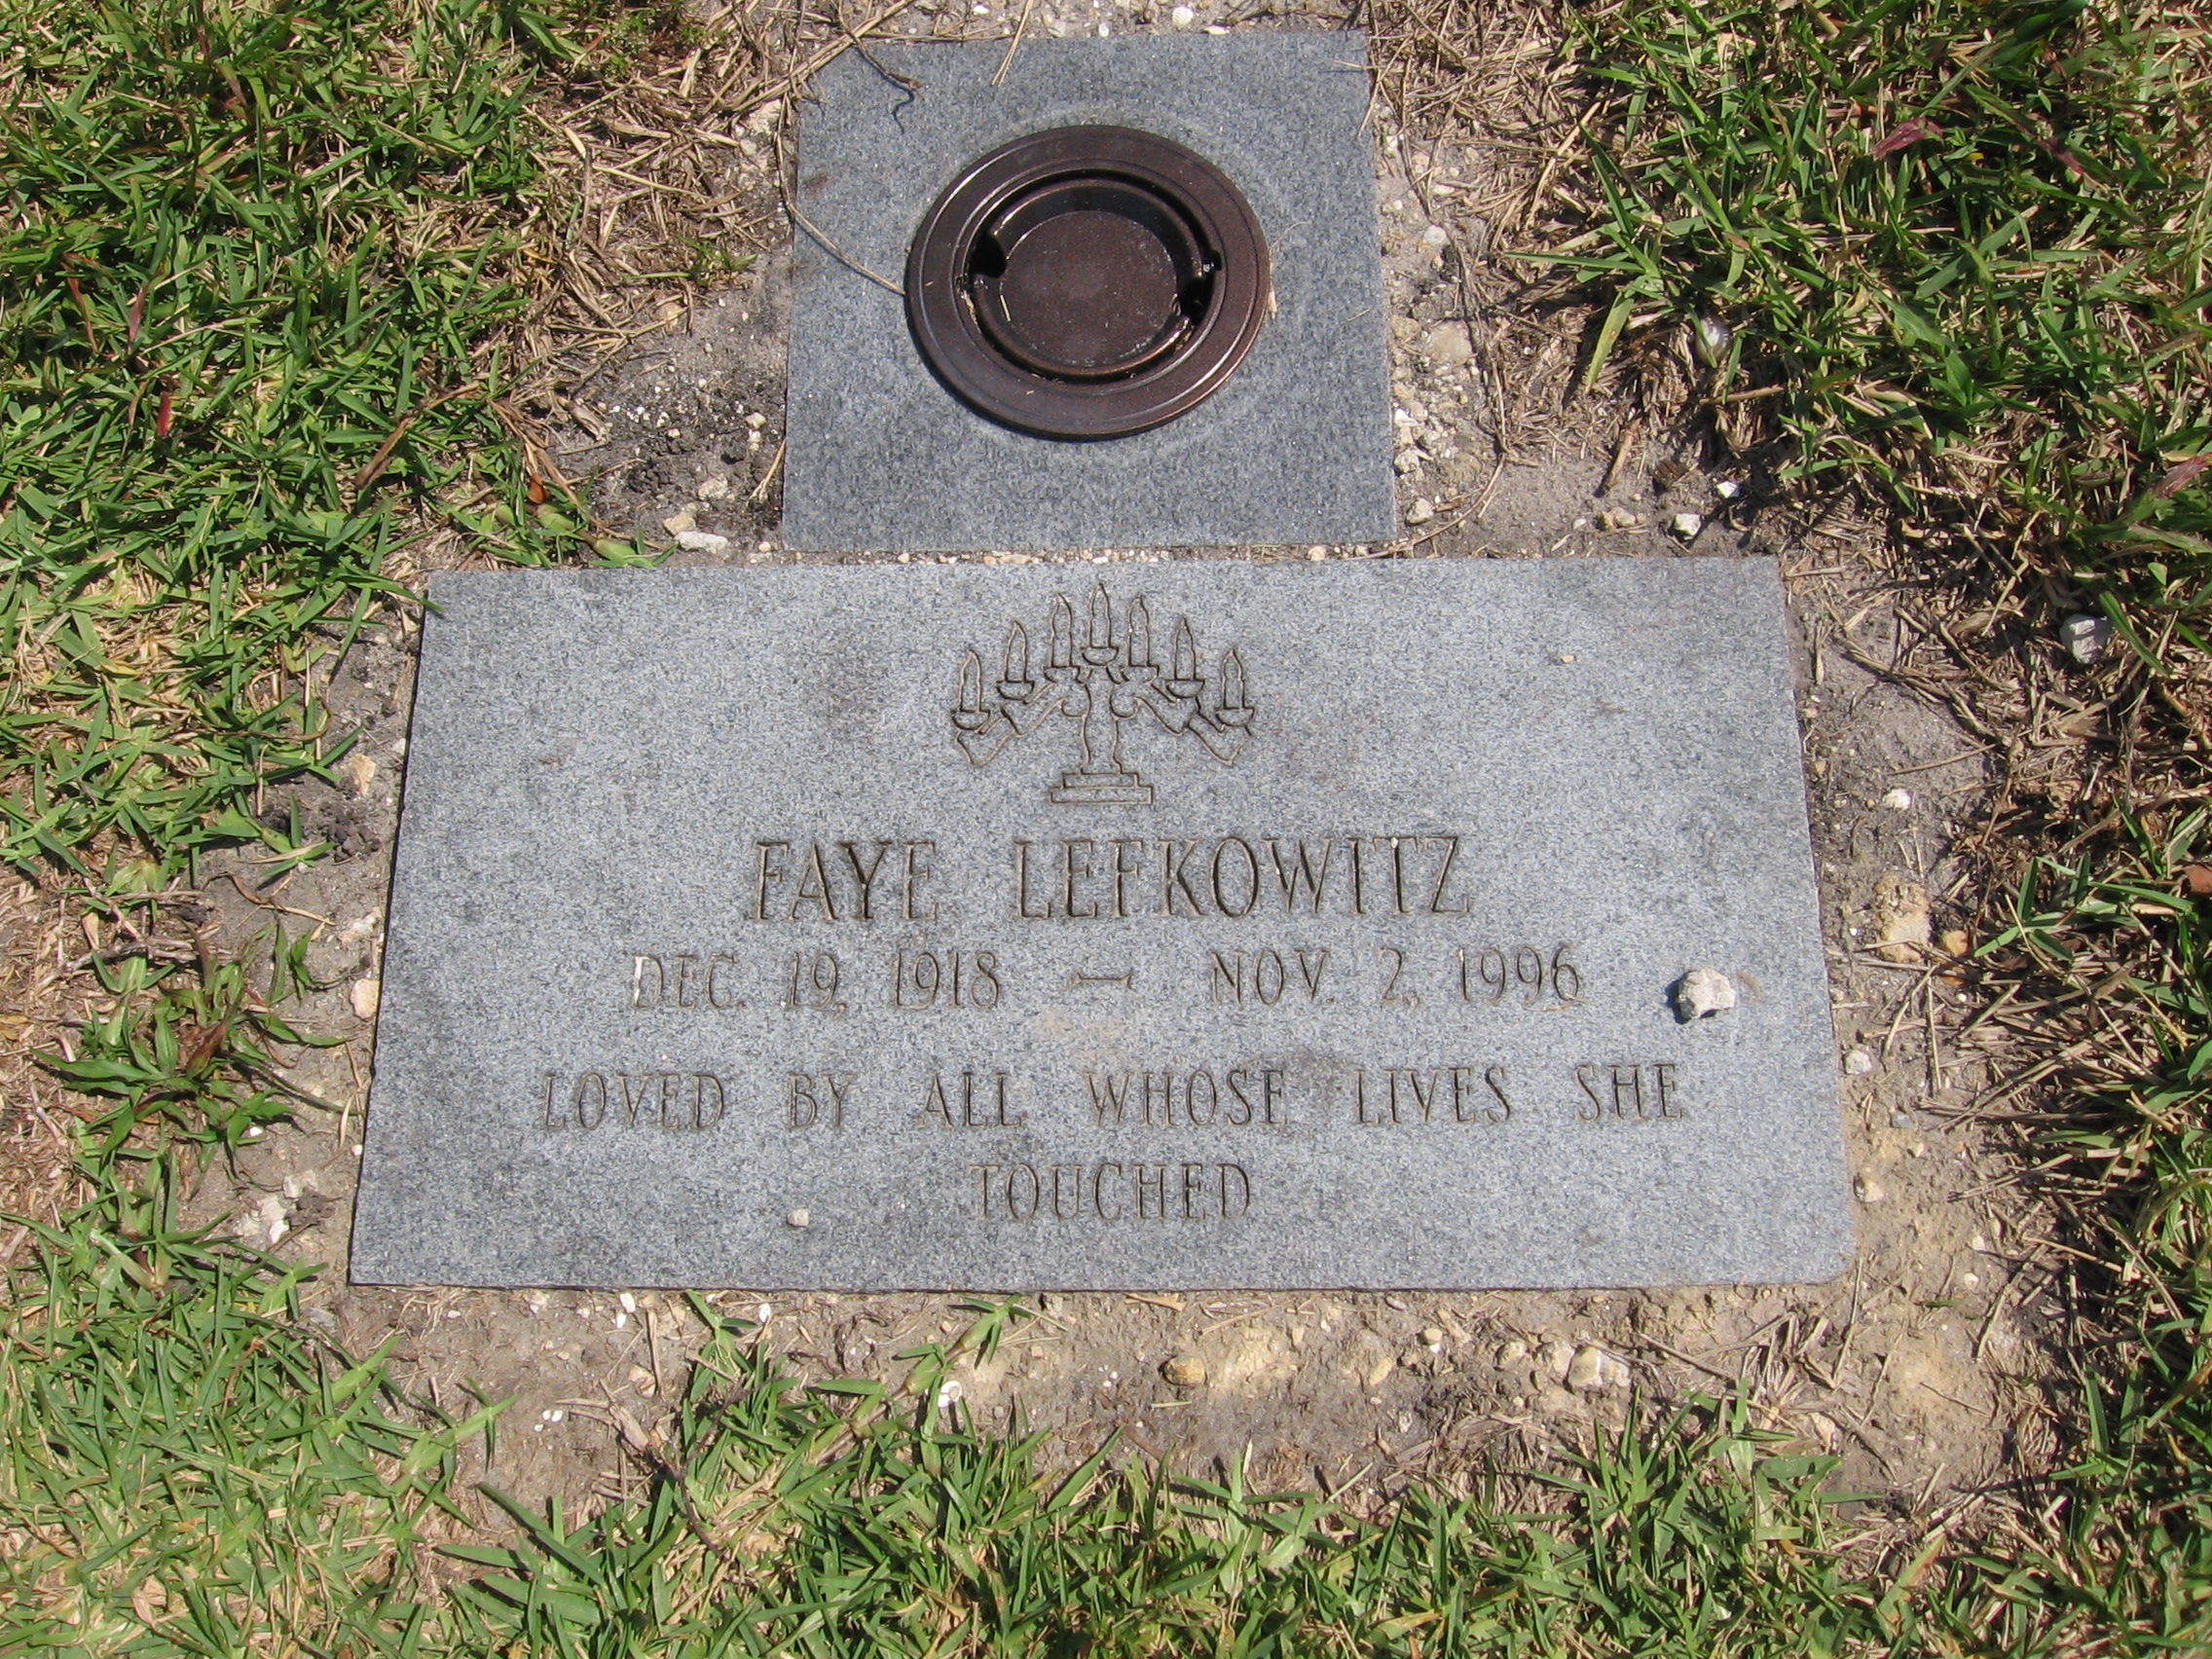 Faye Lefkowitz